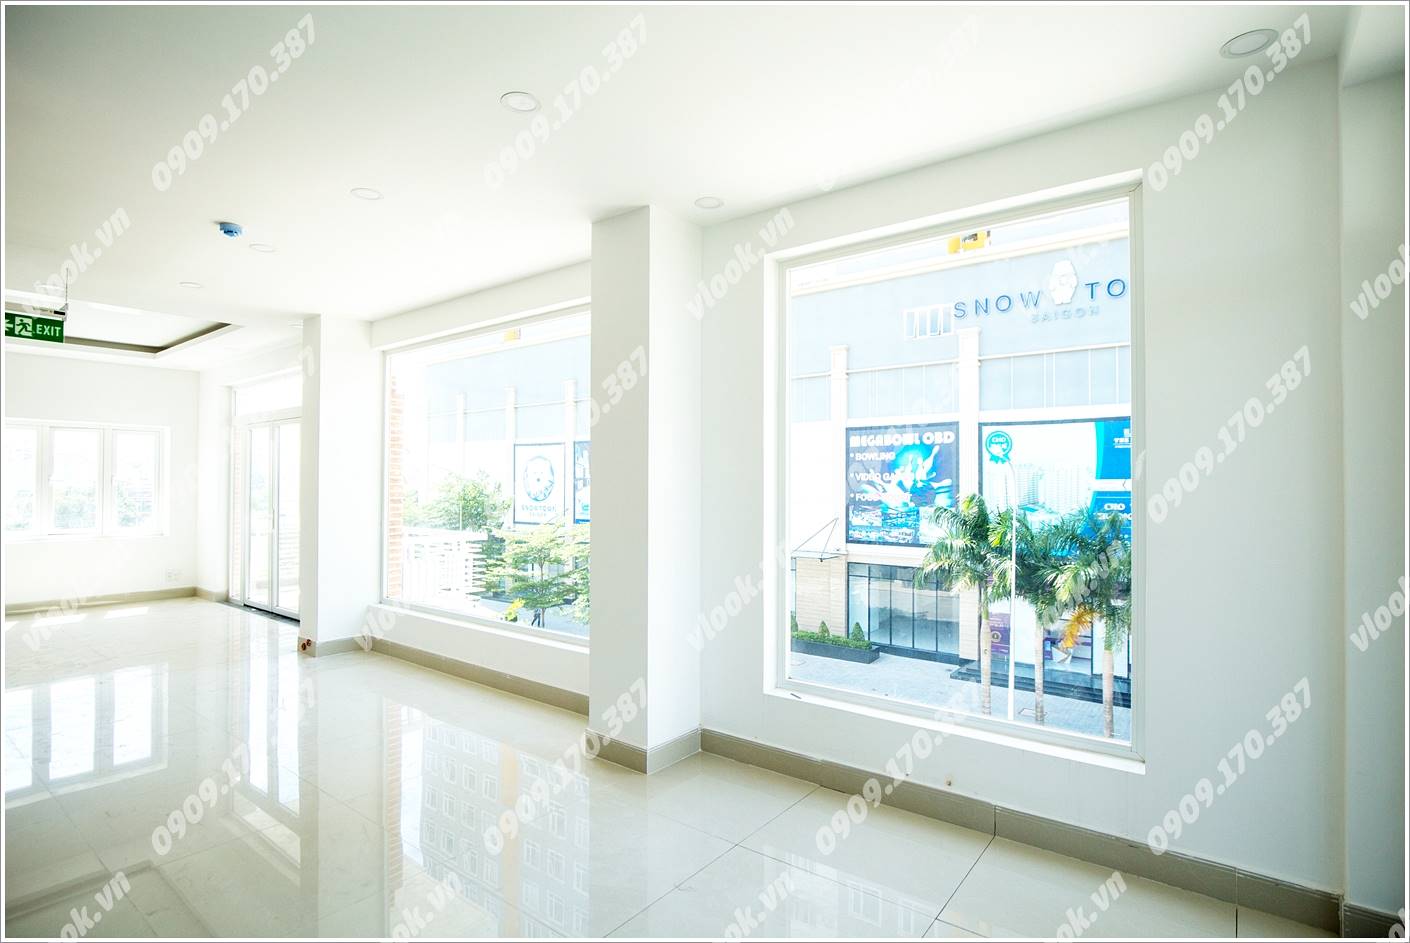 Cao ốc văn phòng cho thuê Đồng Văn Cống Building, Quận 2, TPHCM - vlook.vn